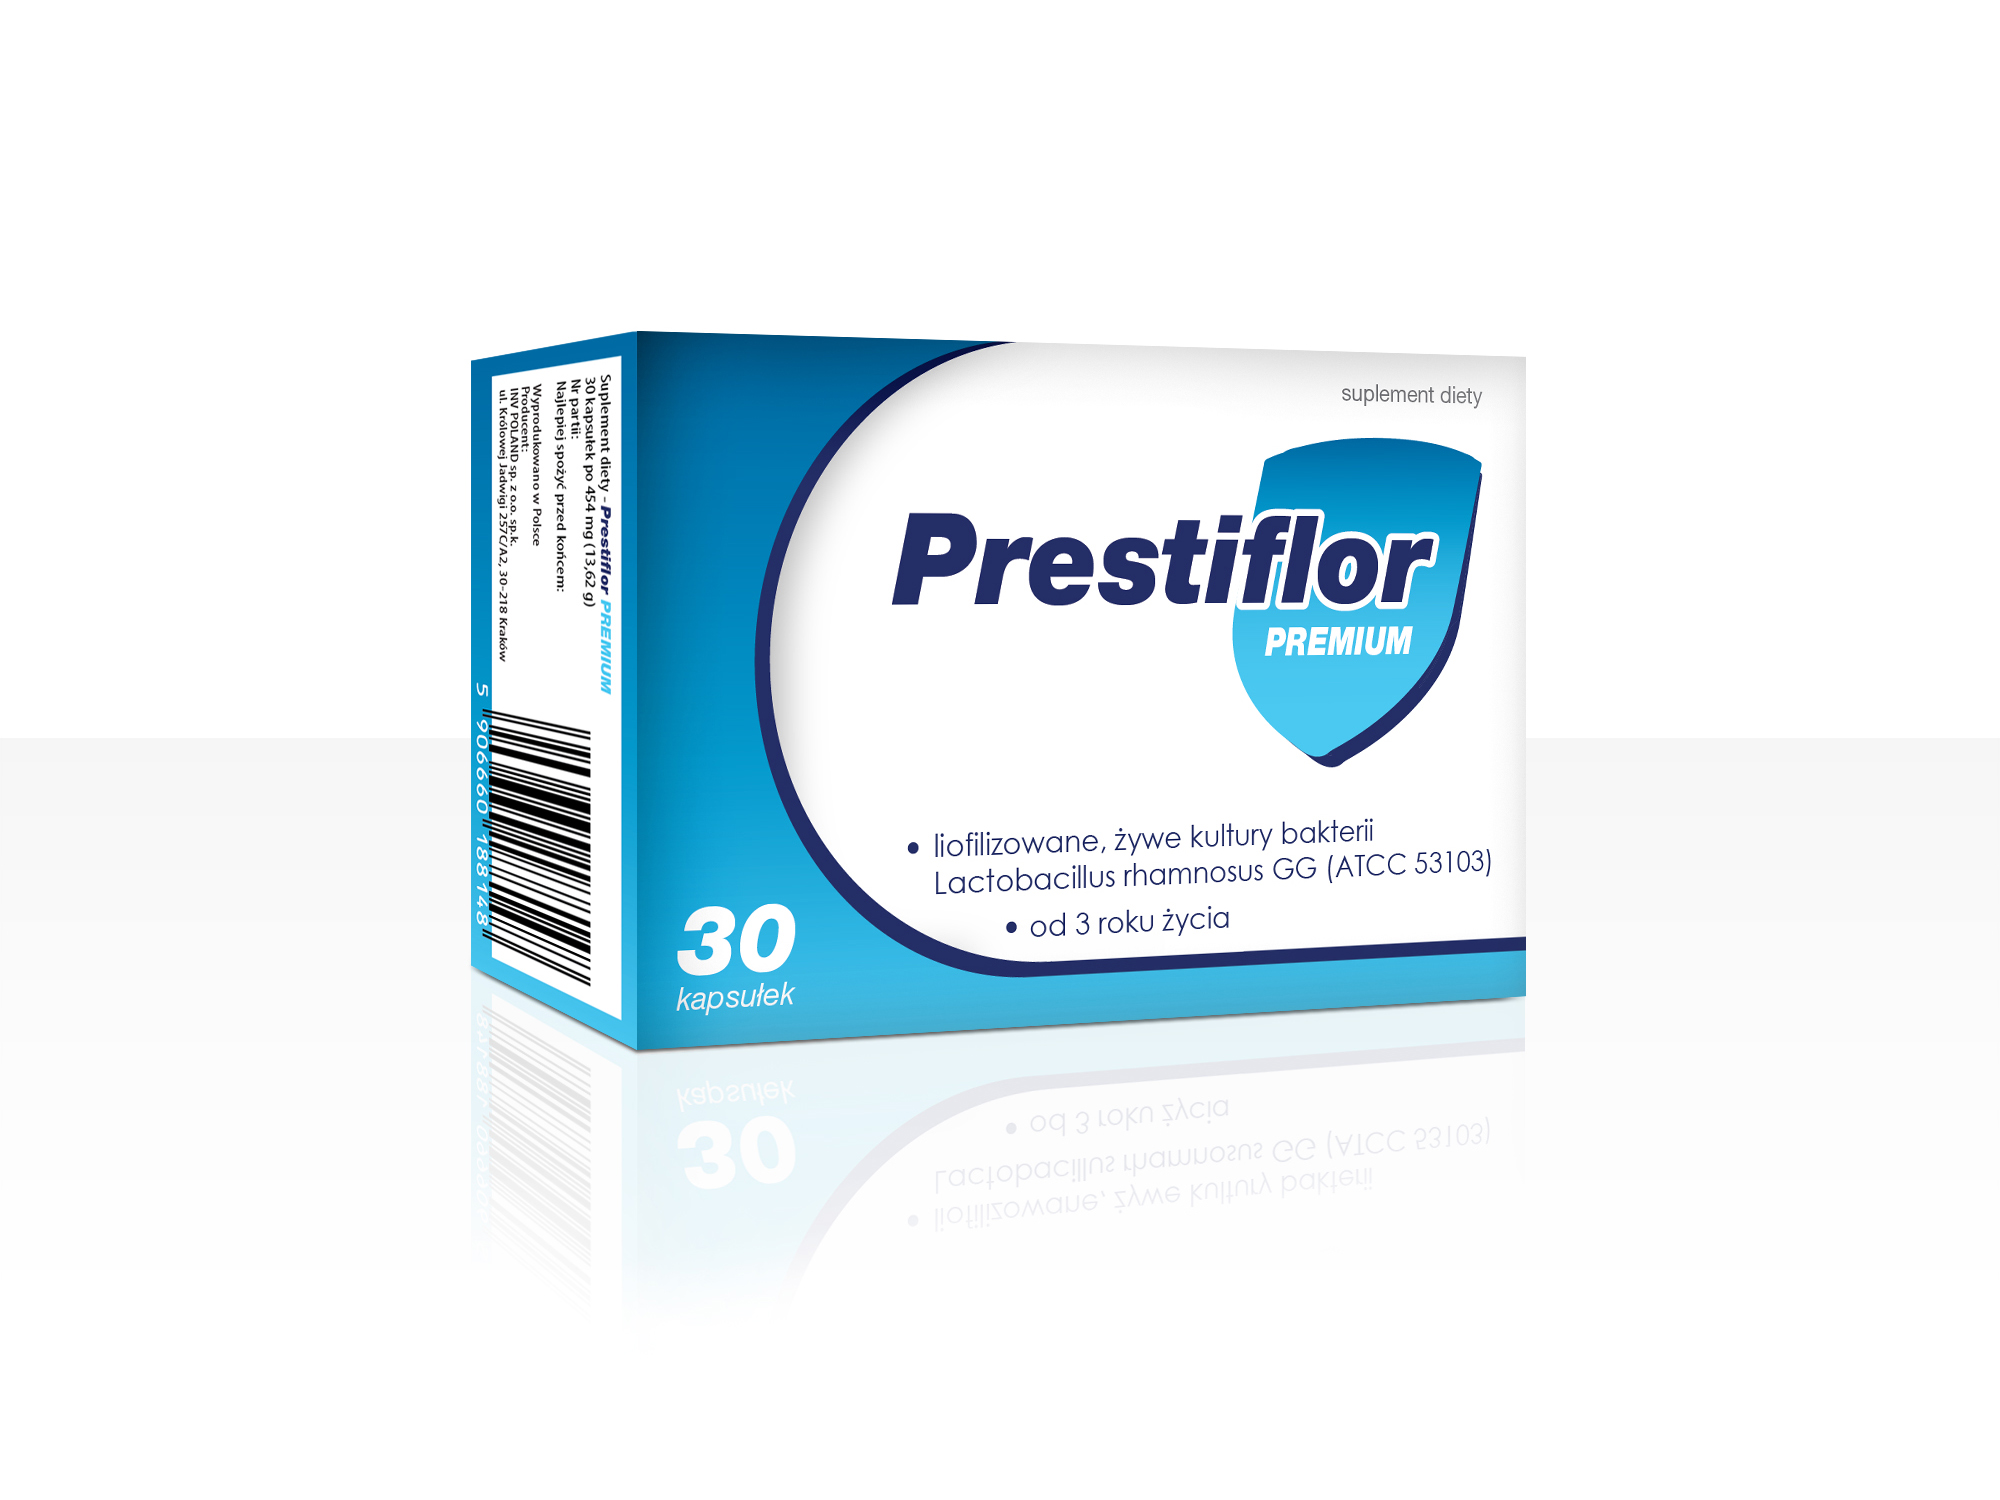 Prestiflor PREMIUM kapsułki - suplement diety zawierający liofilizowane, żywe kultury bakterii Lactobacillus rhamnosus GG.